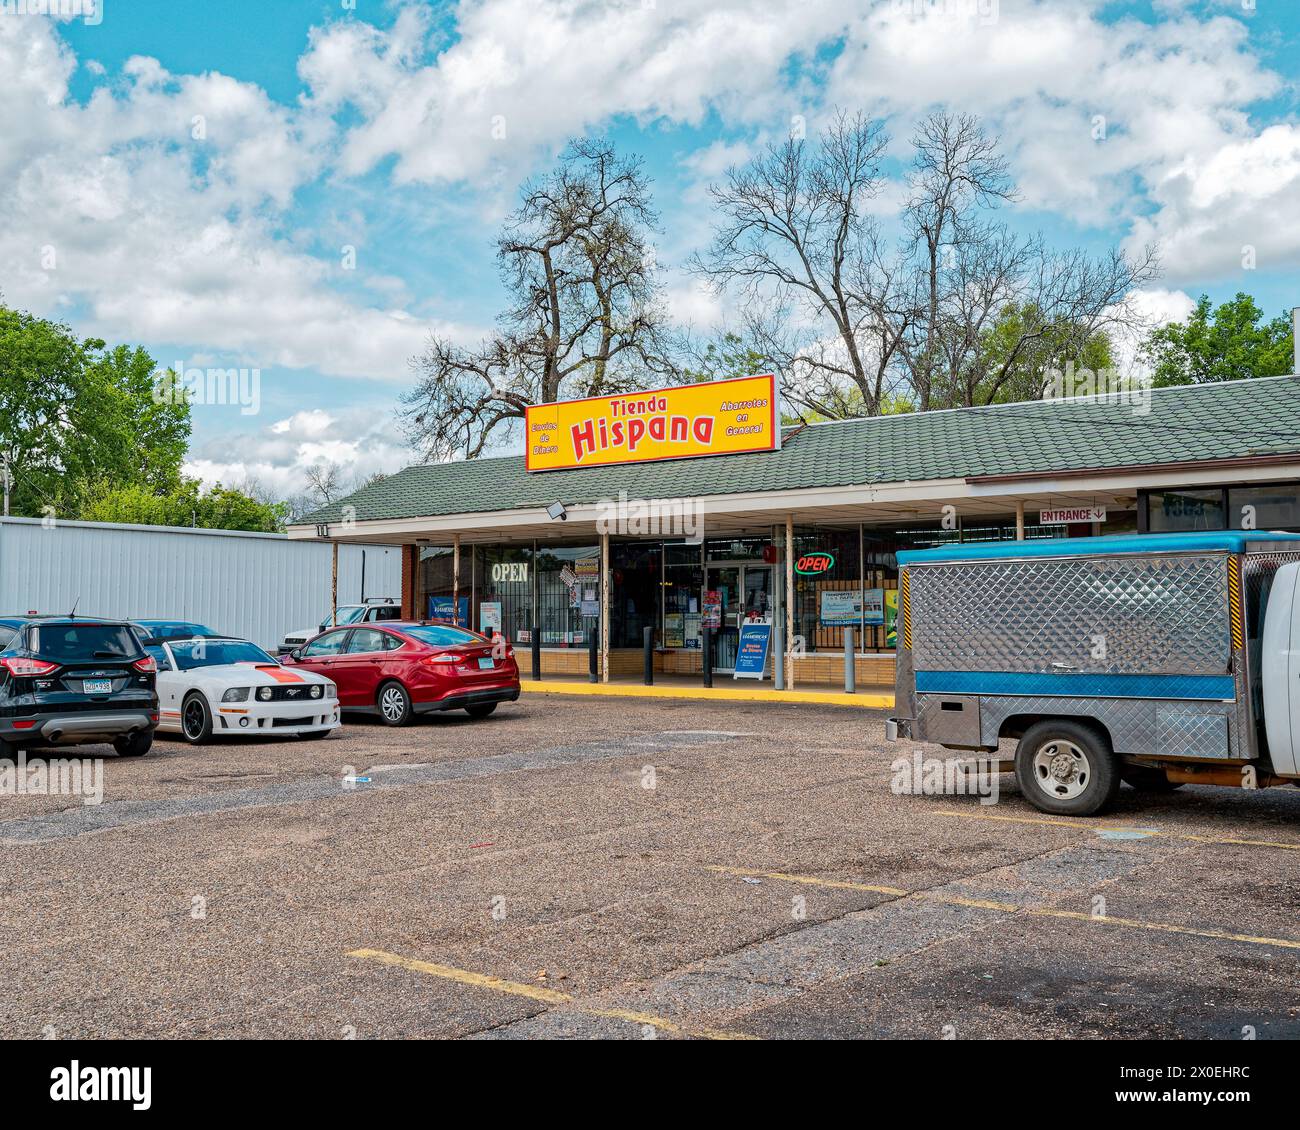 Tienda Hispana, ein kleiner latein- oder latino-Supermarkt oder 24-Stunden-Geschäft in Montgomery Alabama, USA. Stockfoto